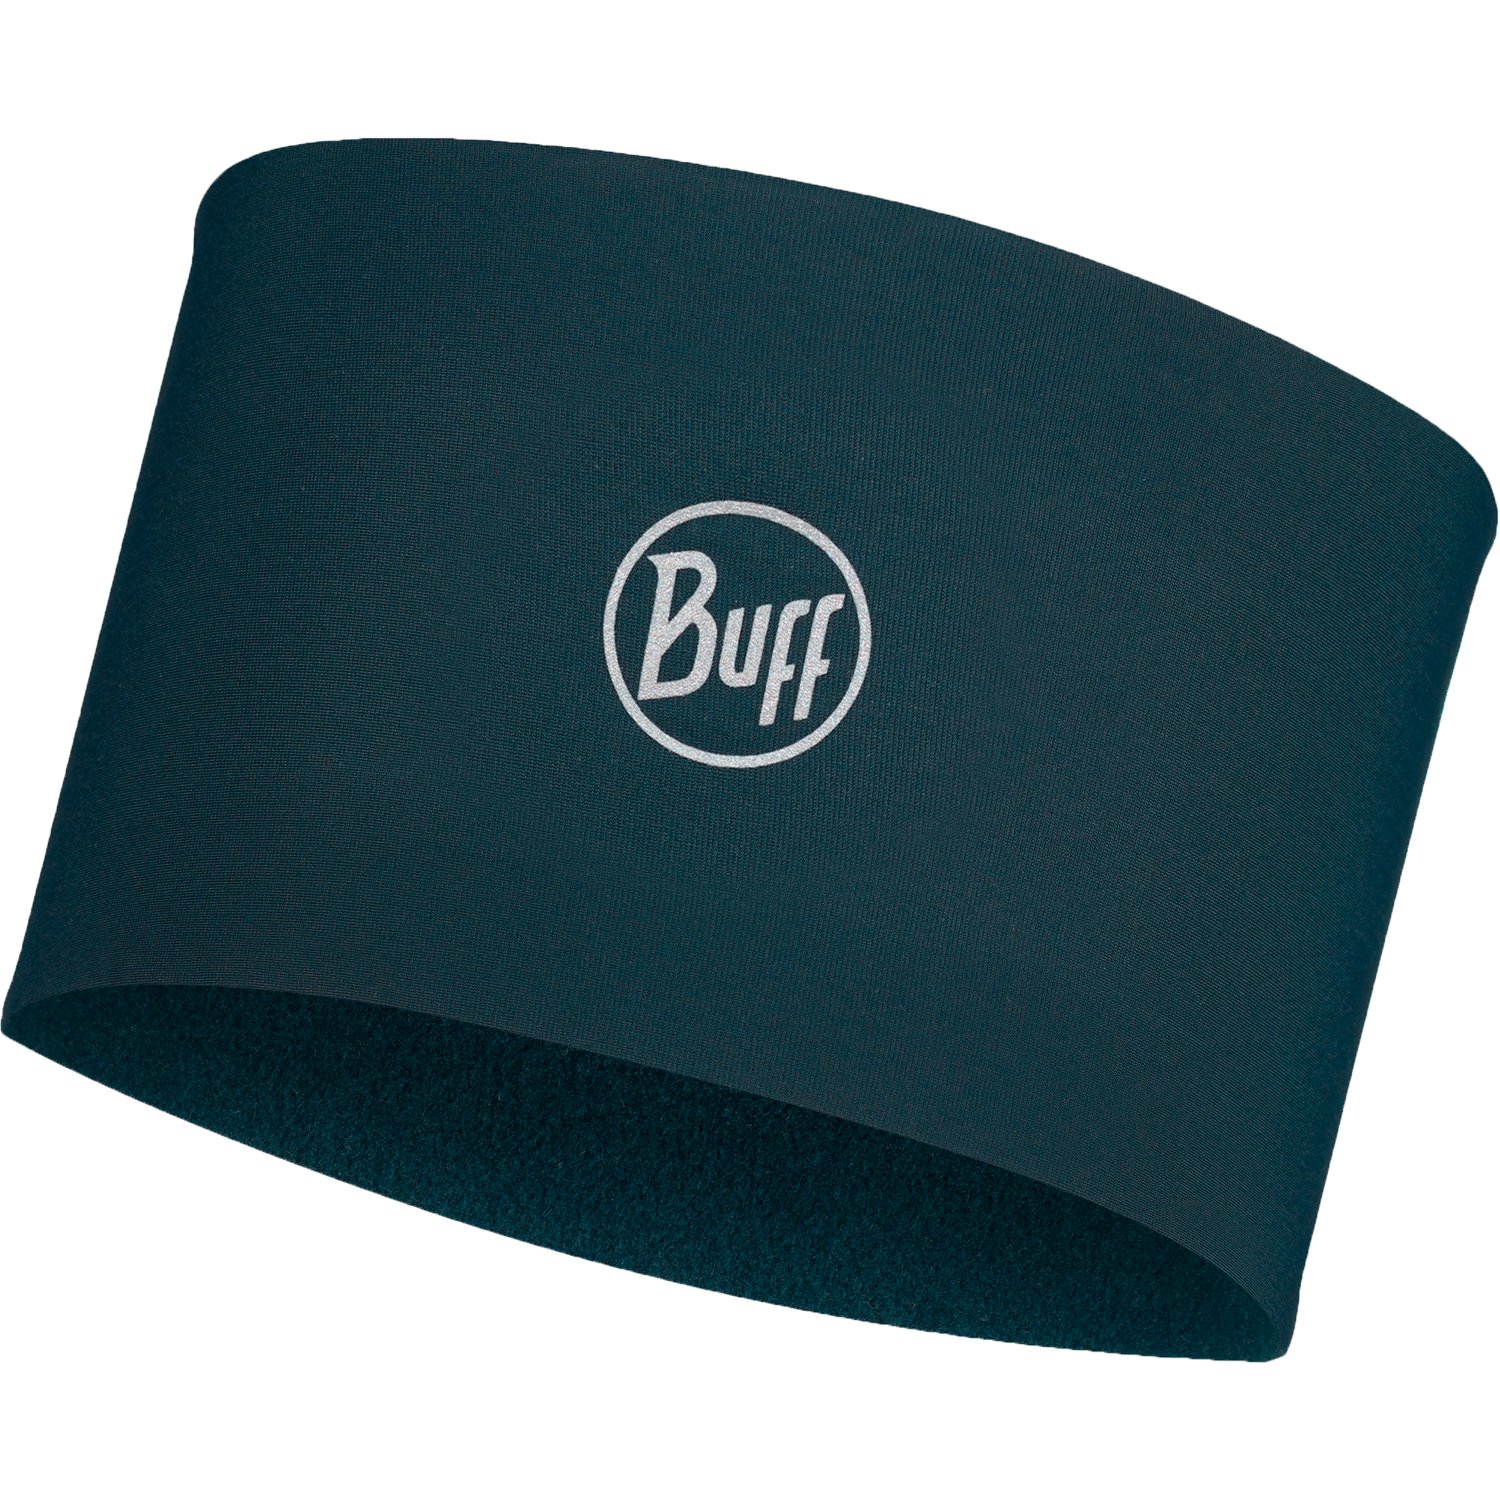 Повязка Buff Tech Headband Solid, унисекс, 2022-23, серый, 124061.937.10.00 повязка buff tech headband nerody pale pink us one size 132528 508 10 00